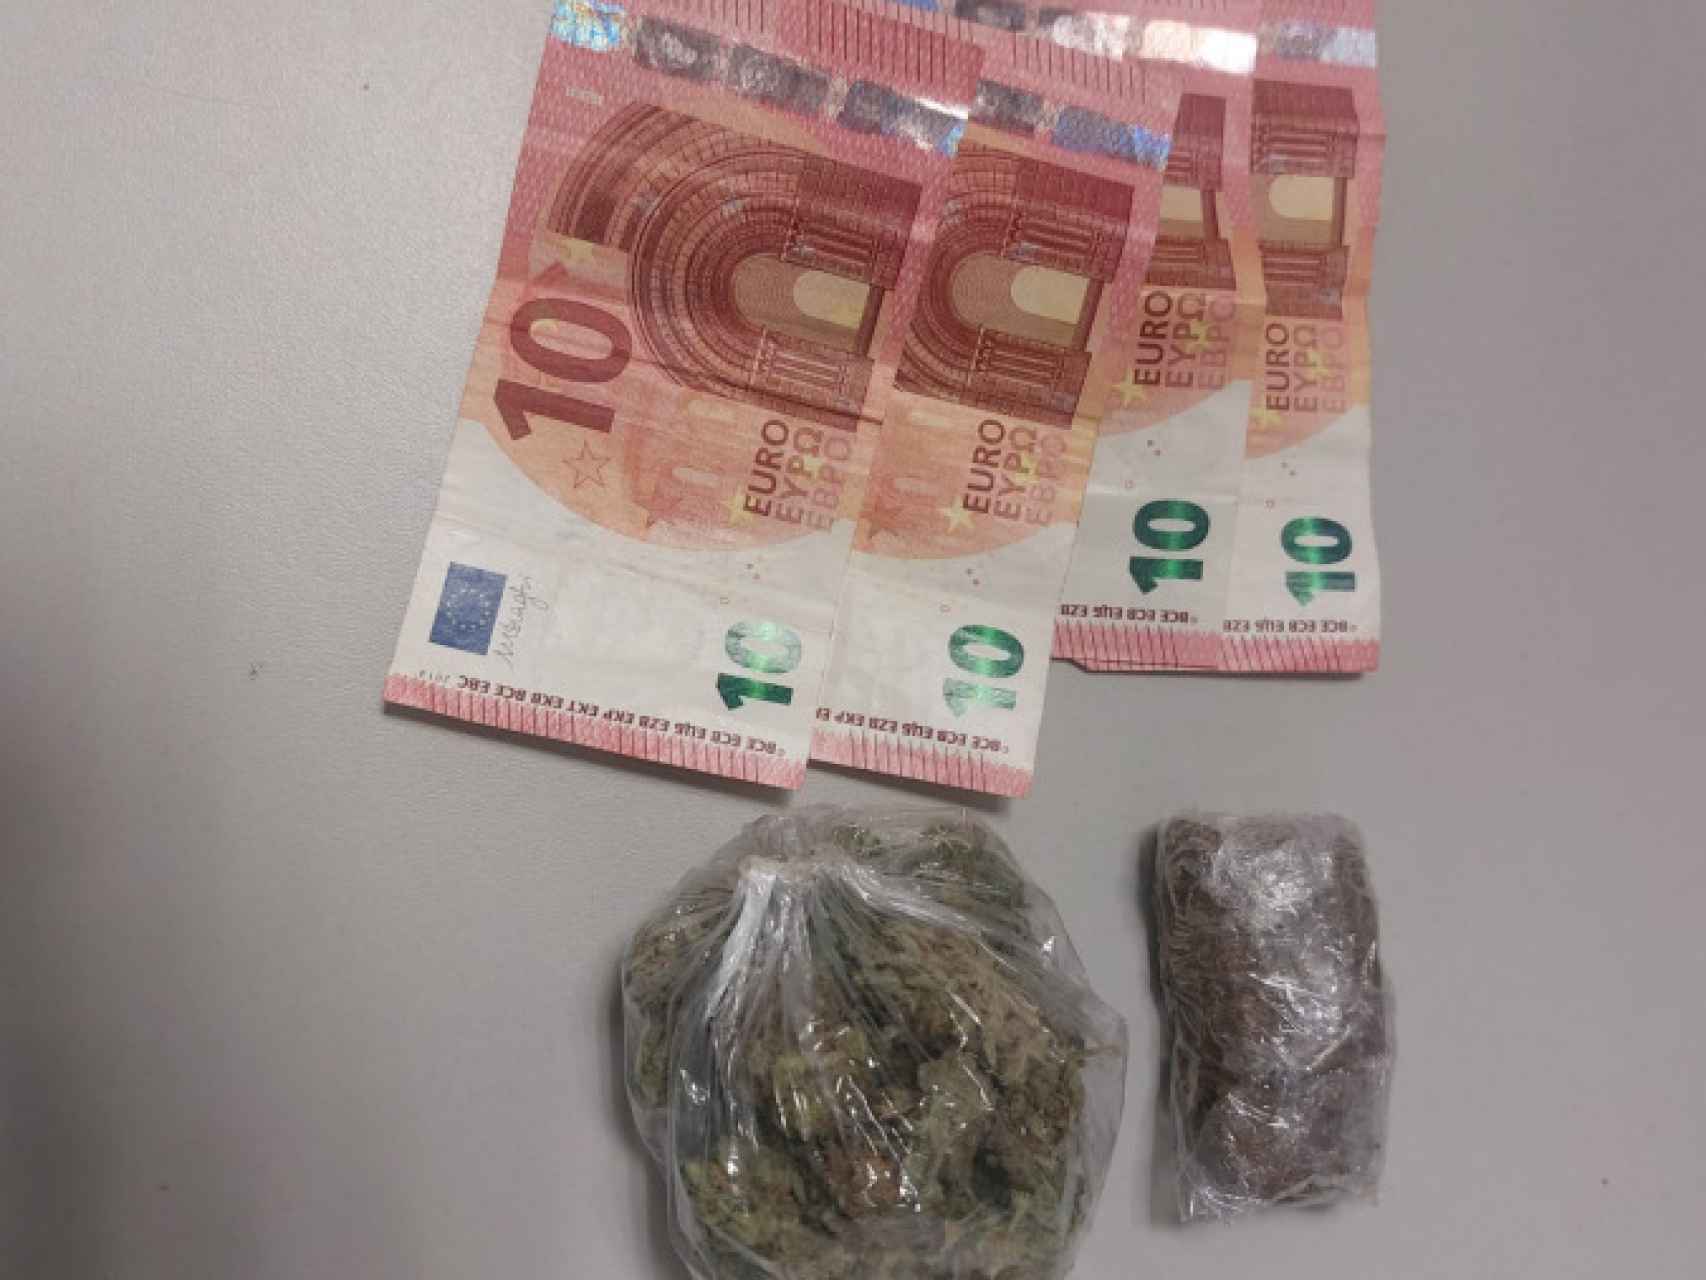 Imagen de la droga y el dinero incautado en Ponferrada.